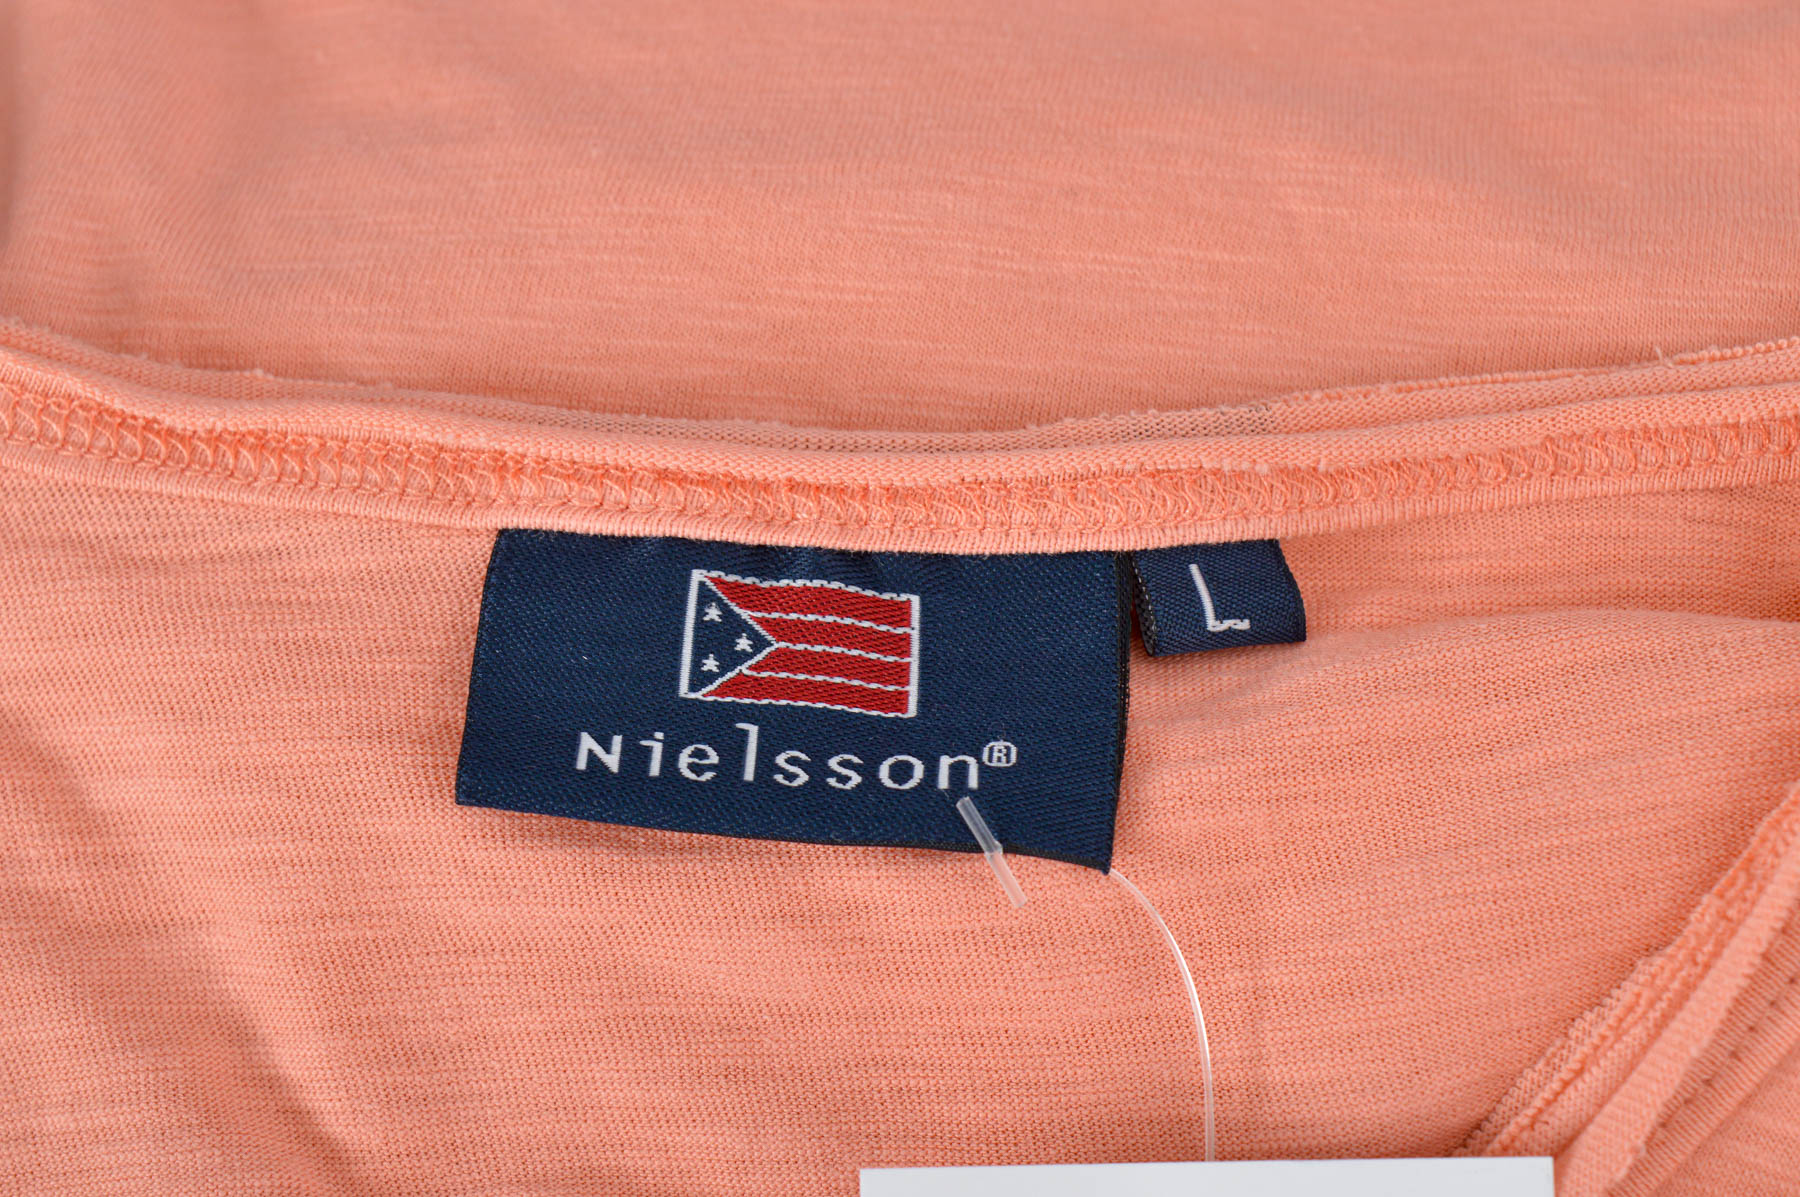 Дамска тениска - Nielsson - 2